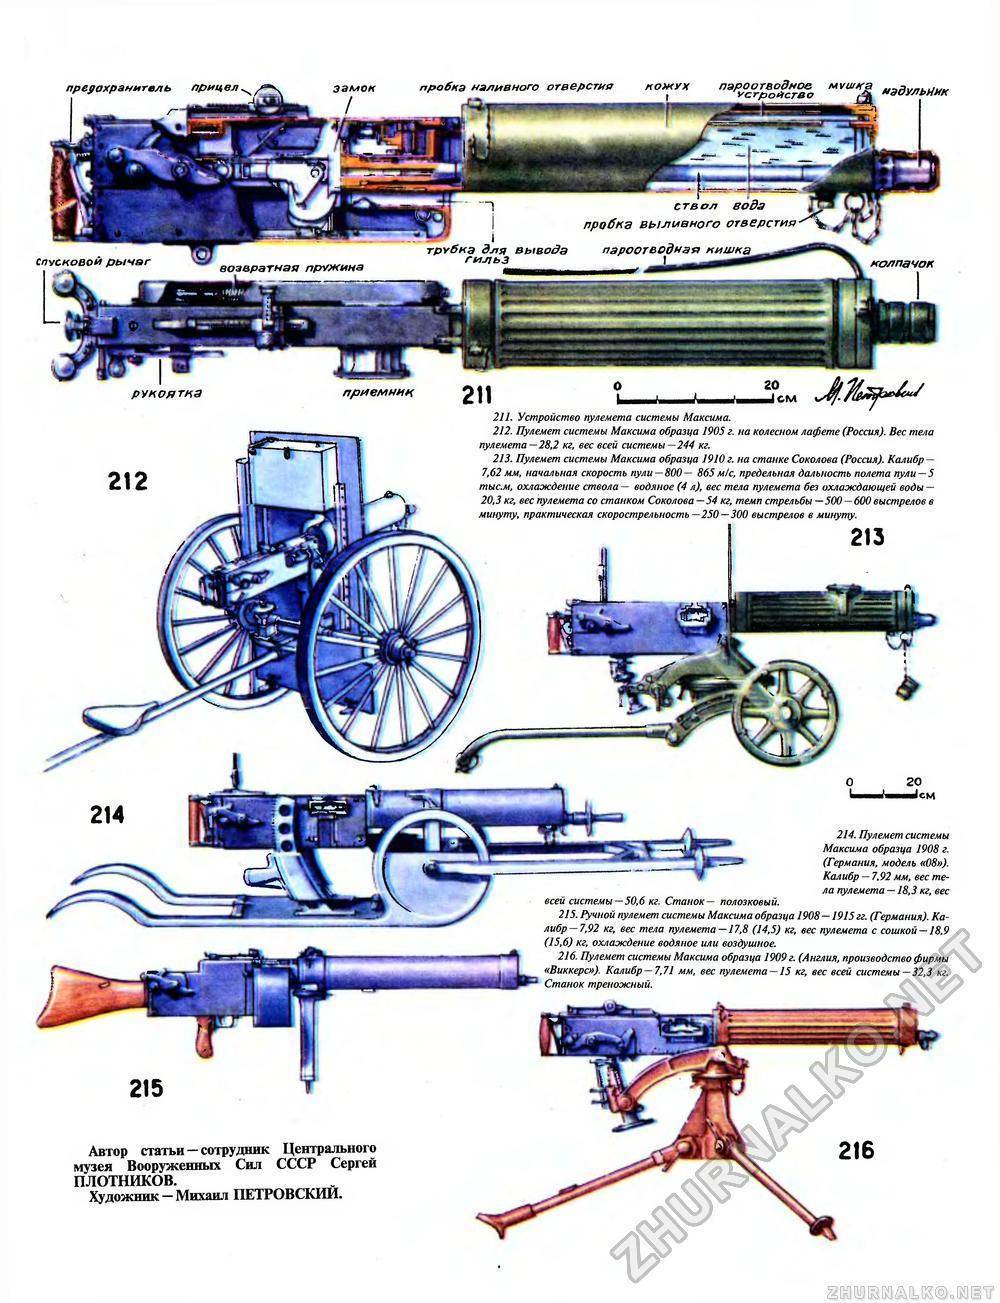 Пулемет максим: устройство и принцип работы, кто придумал оружие, история ⭐ doblest.club